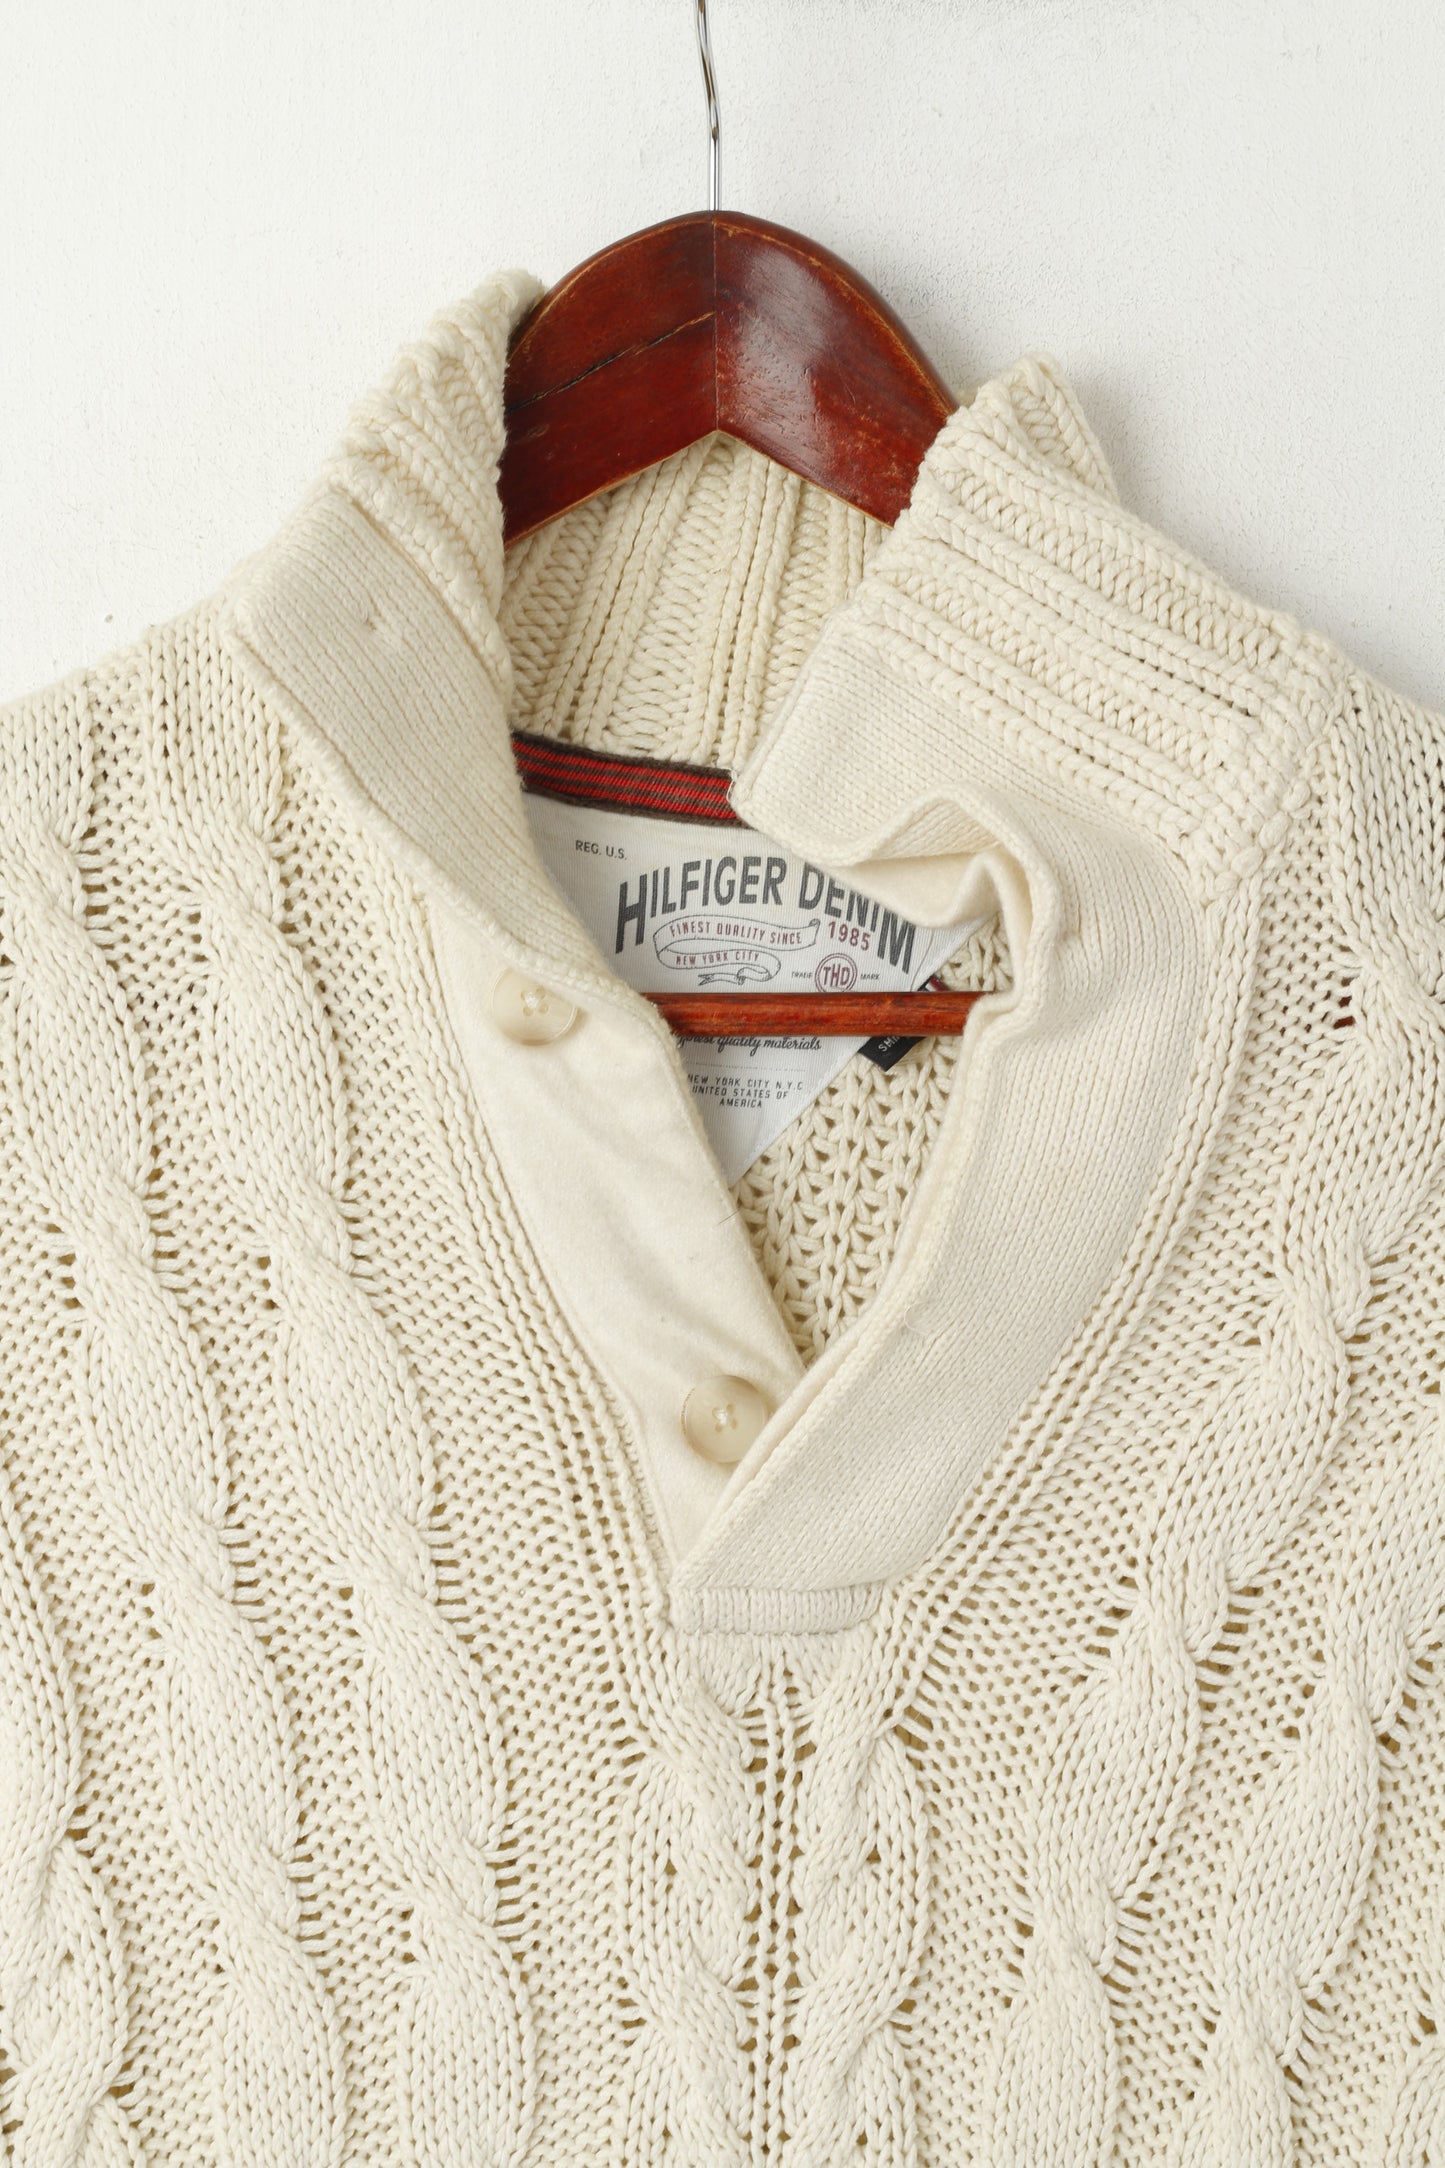 Maglione Hilfiger Denim da uomo, color crema, in cotone lavorato a maglia, classico, in tinta unita